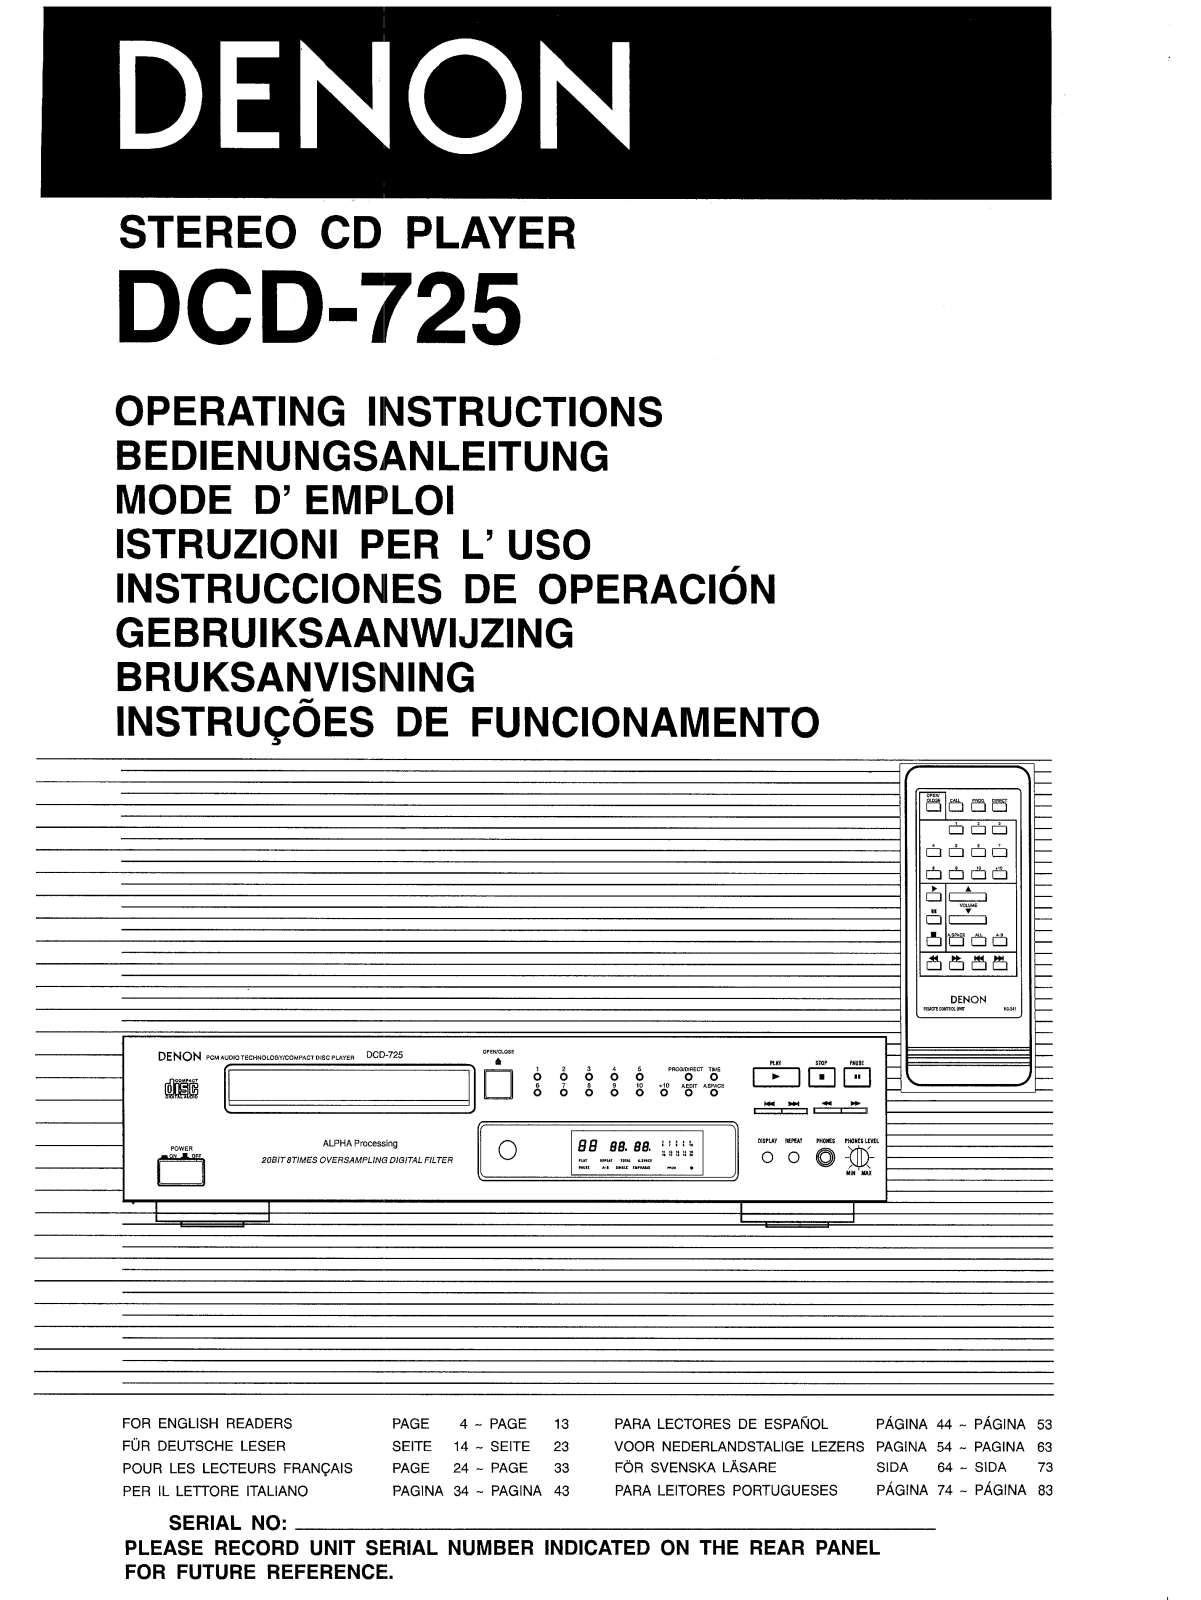 Denon DCD-725 Owner's Manual